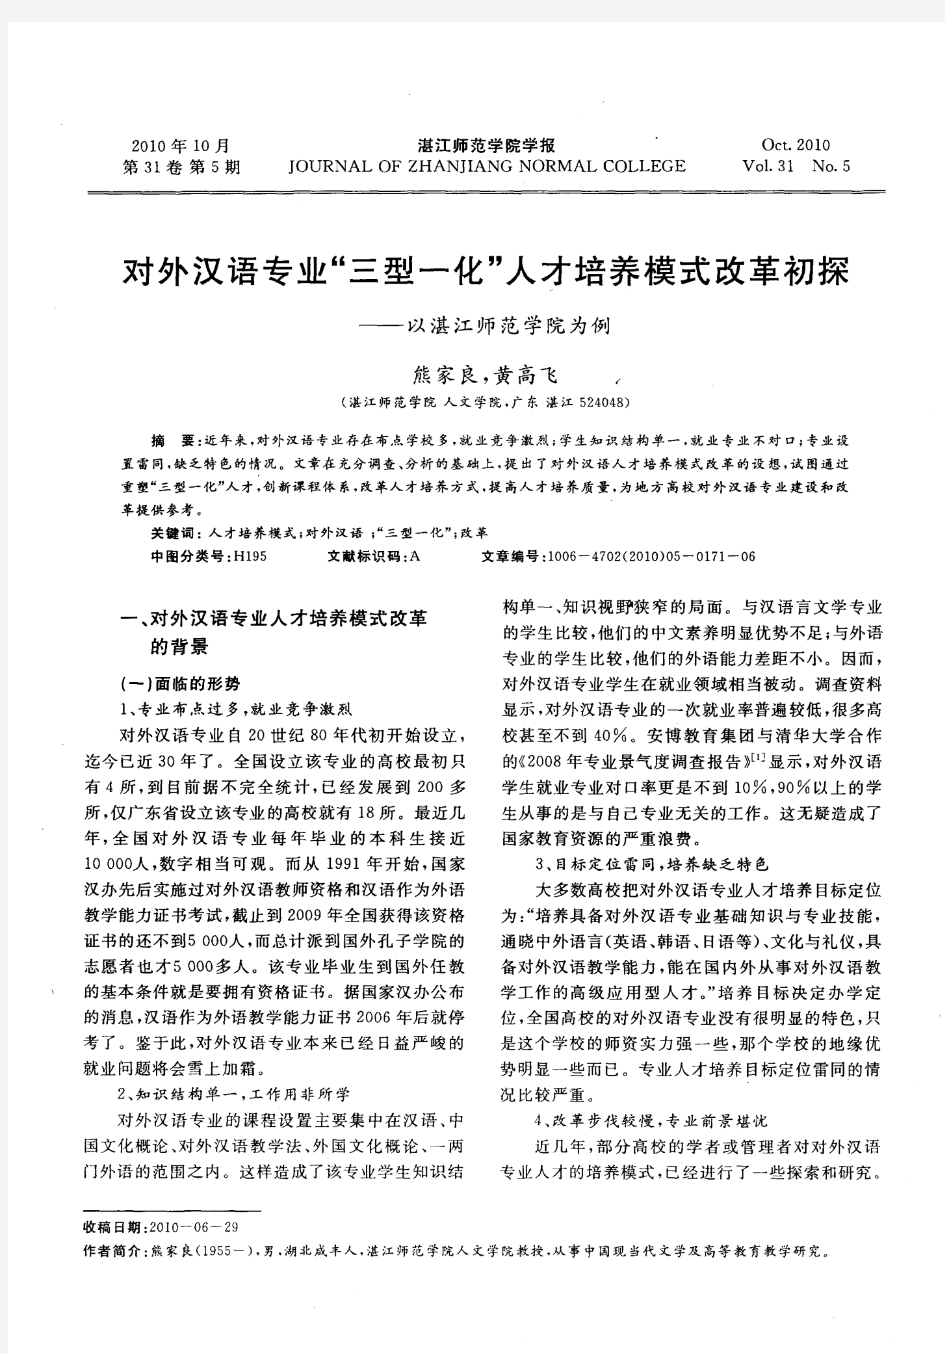 对外汉语专业“三型一化”人才培养模式改革初探——以湛江师范学院为例